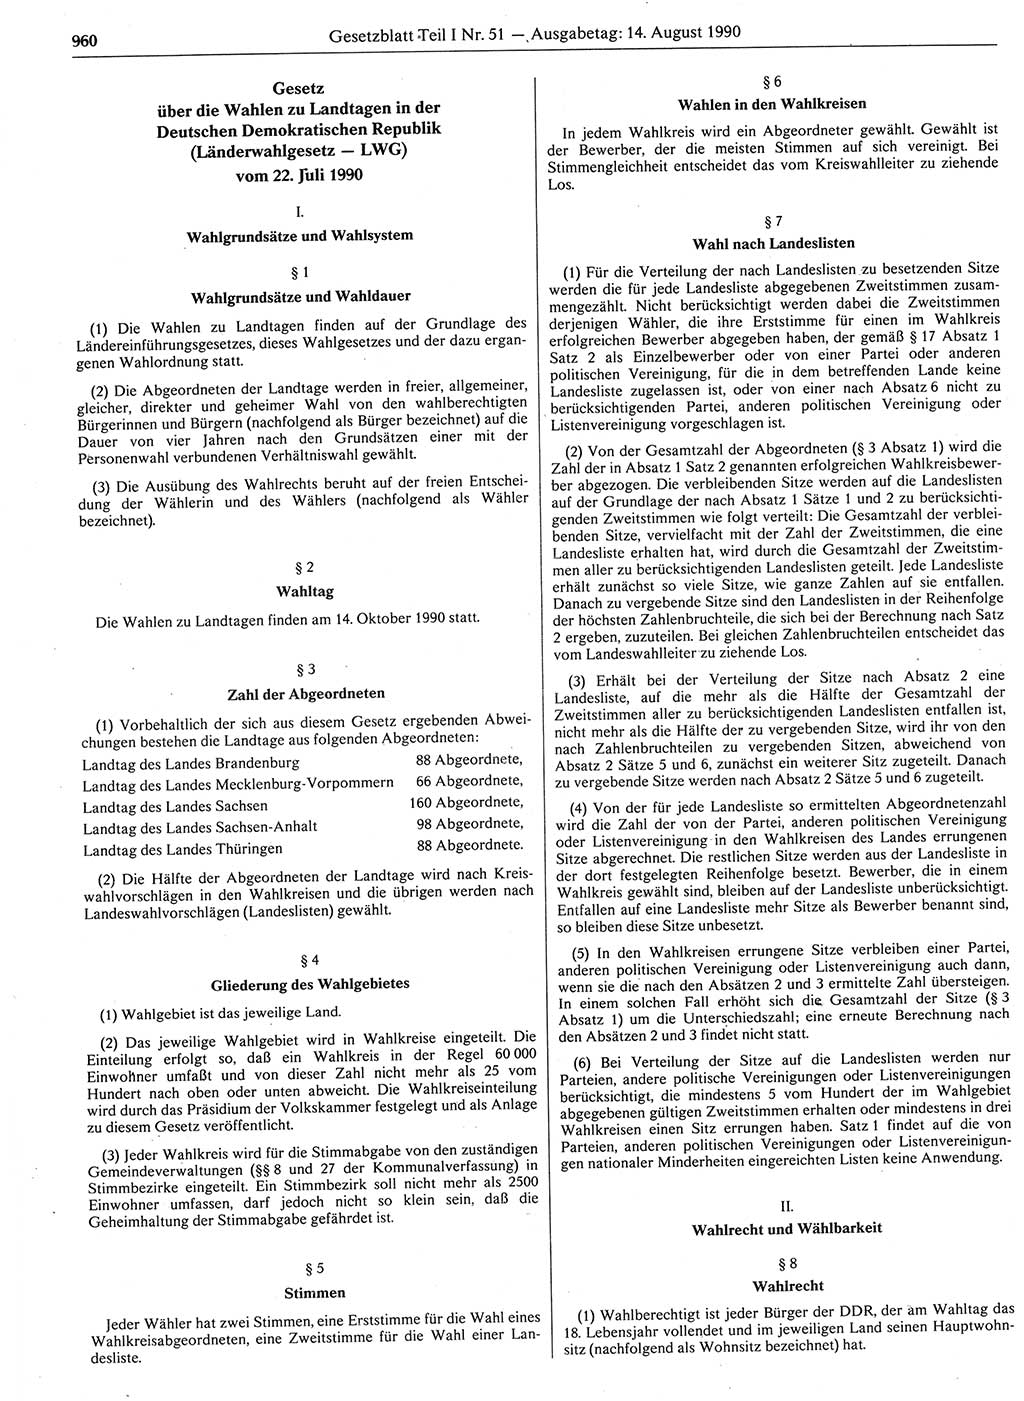 Gesetzblatt (GBl.) der Deutschen Demokratischen Republik (DDR) Teil Ⅰ 1990, Seite 960 (GBl. DDR Ⅰ 1990, S. 960)